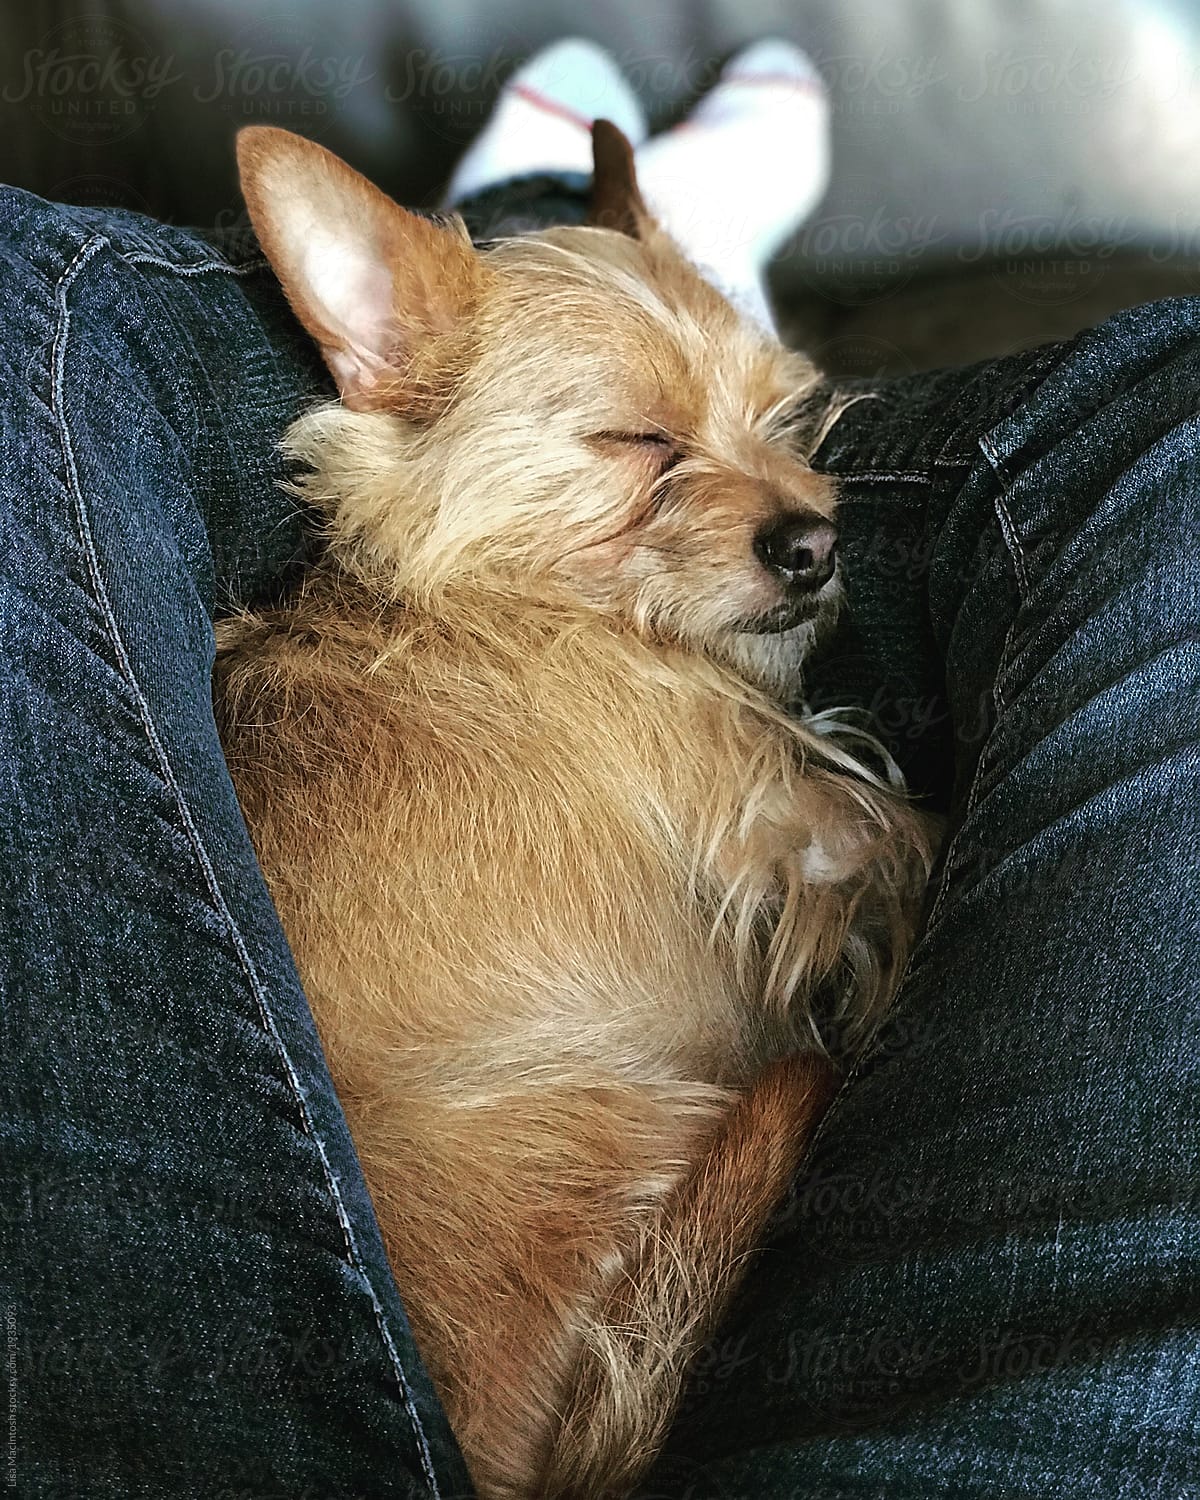 Sleeping terrier snuggled between pair of legs